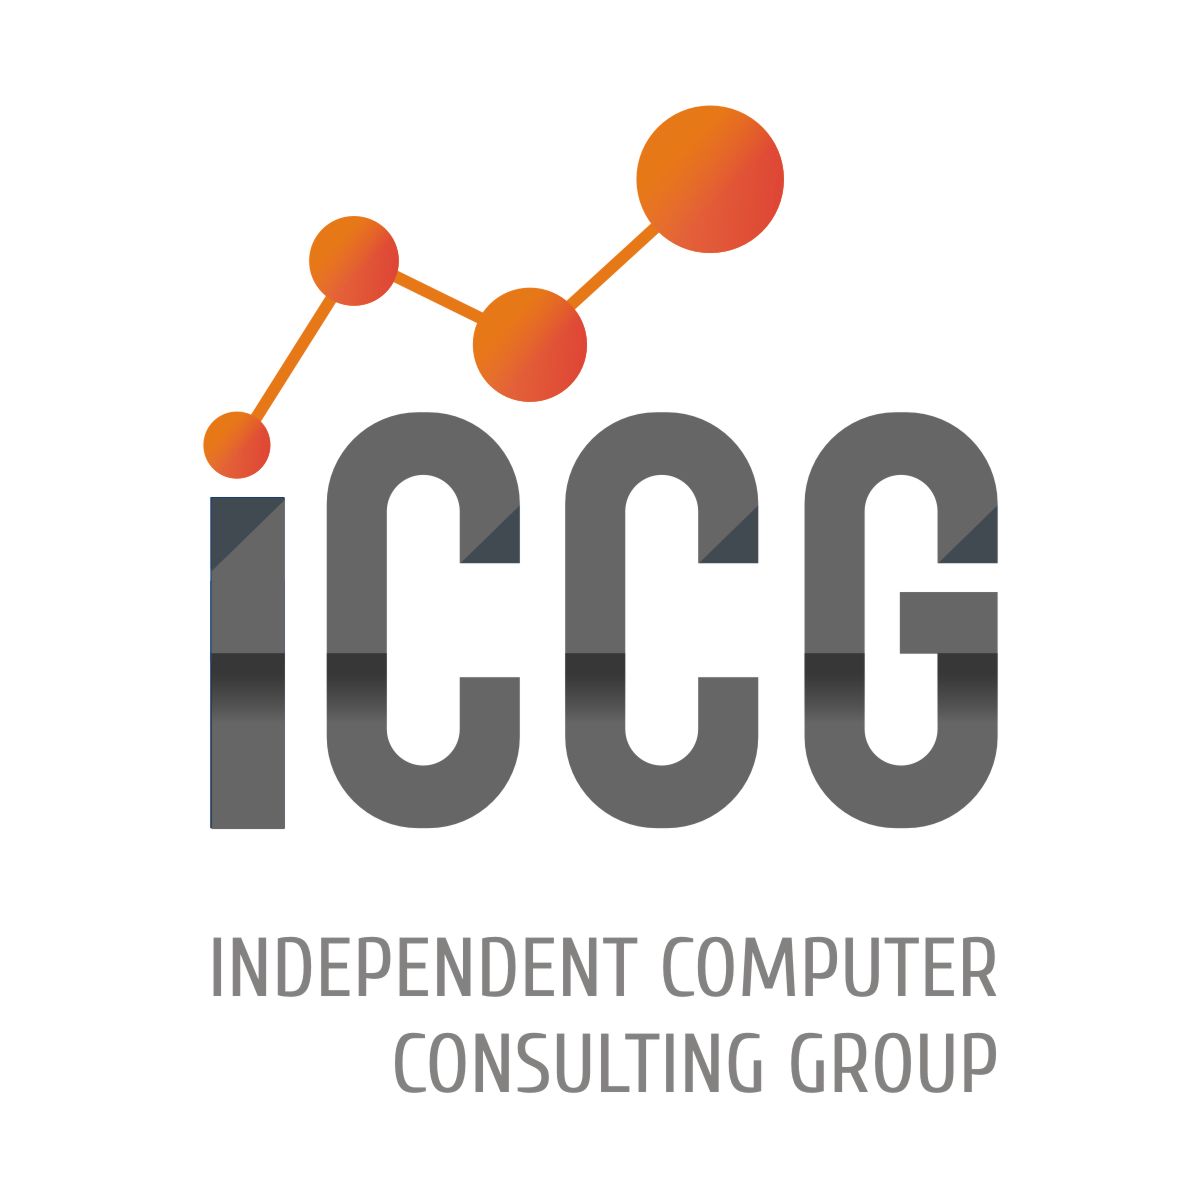 ICCGUS Logo